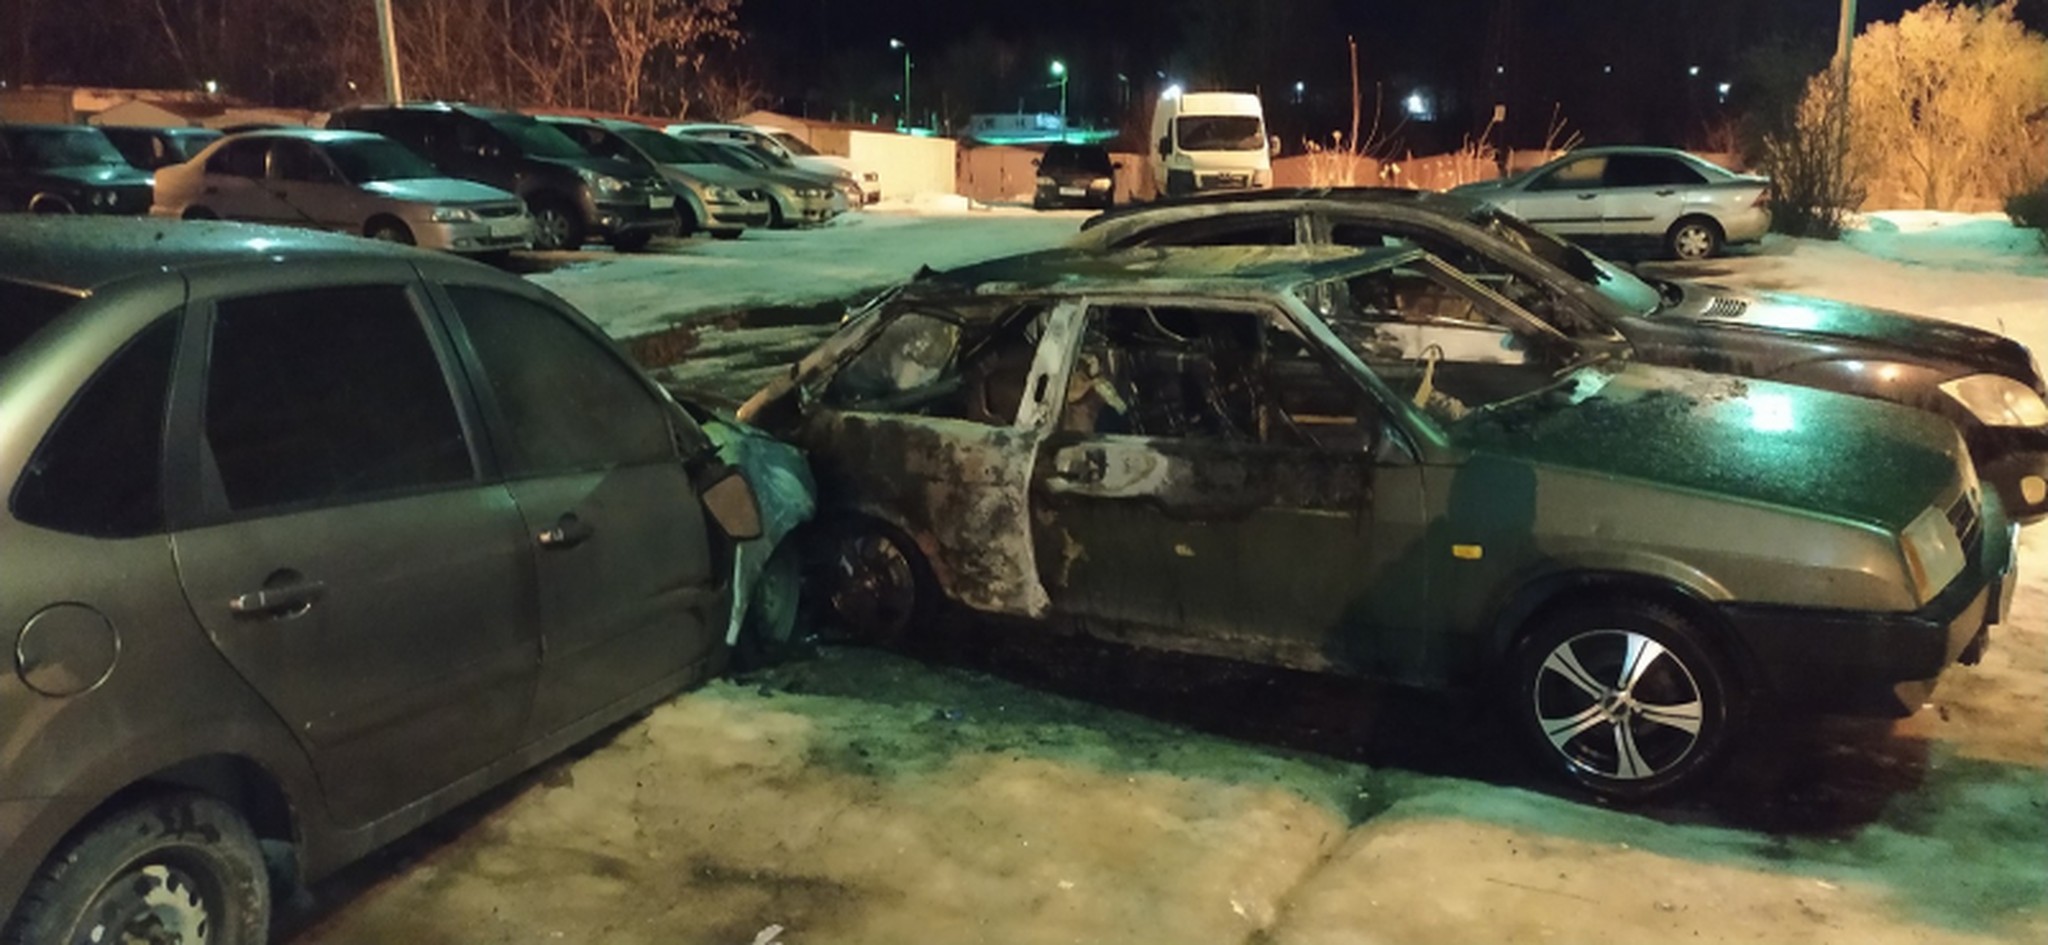 Житель Твери поджег машину по просьбе хозяина и спалил три автомобиля